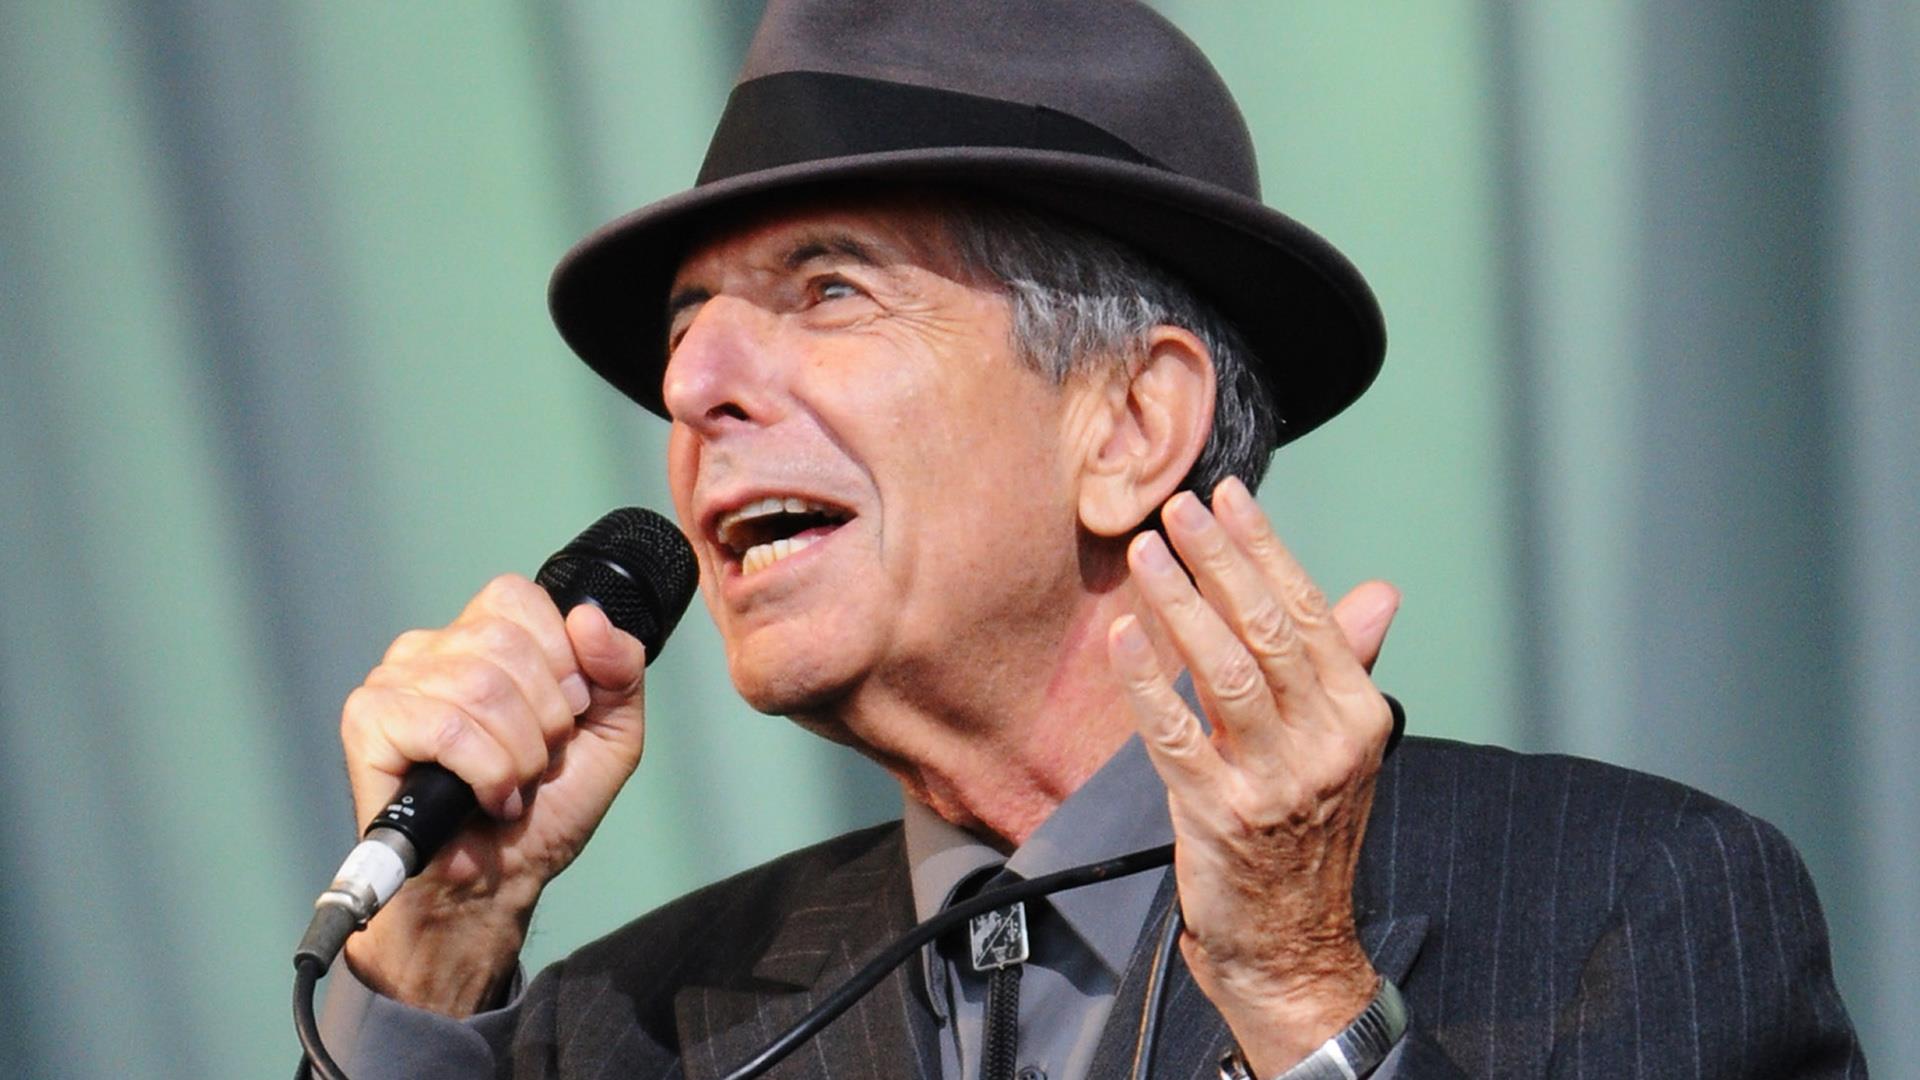 Leonard Cohen, legendary singer-songwriter, dies at 82